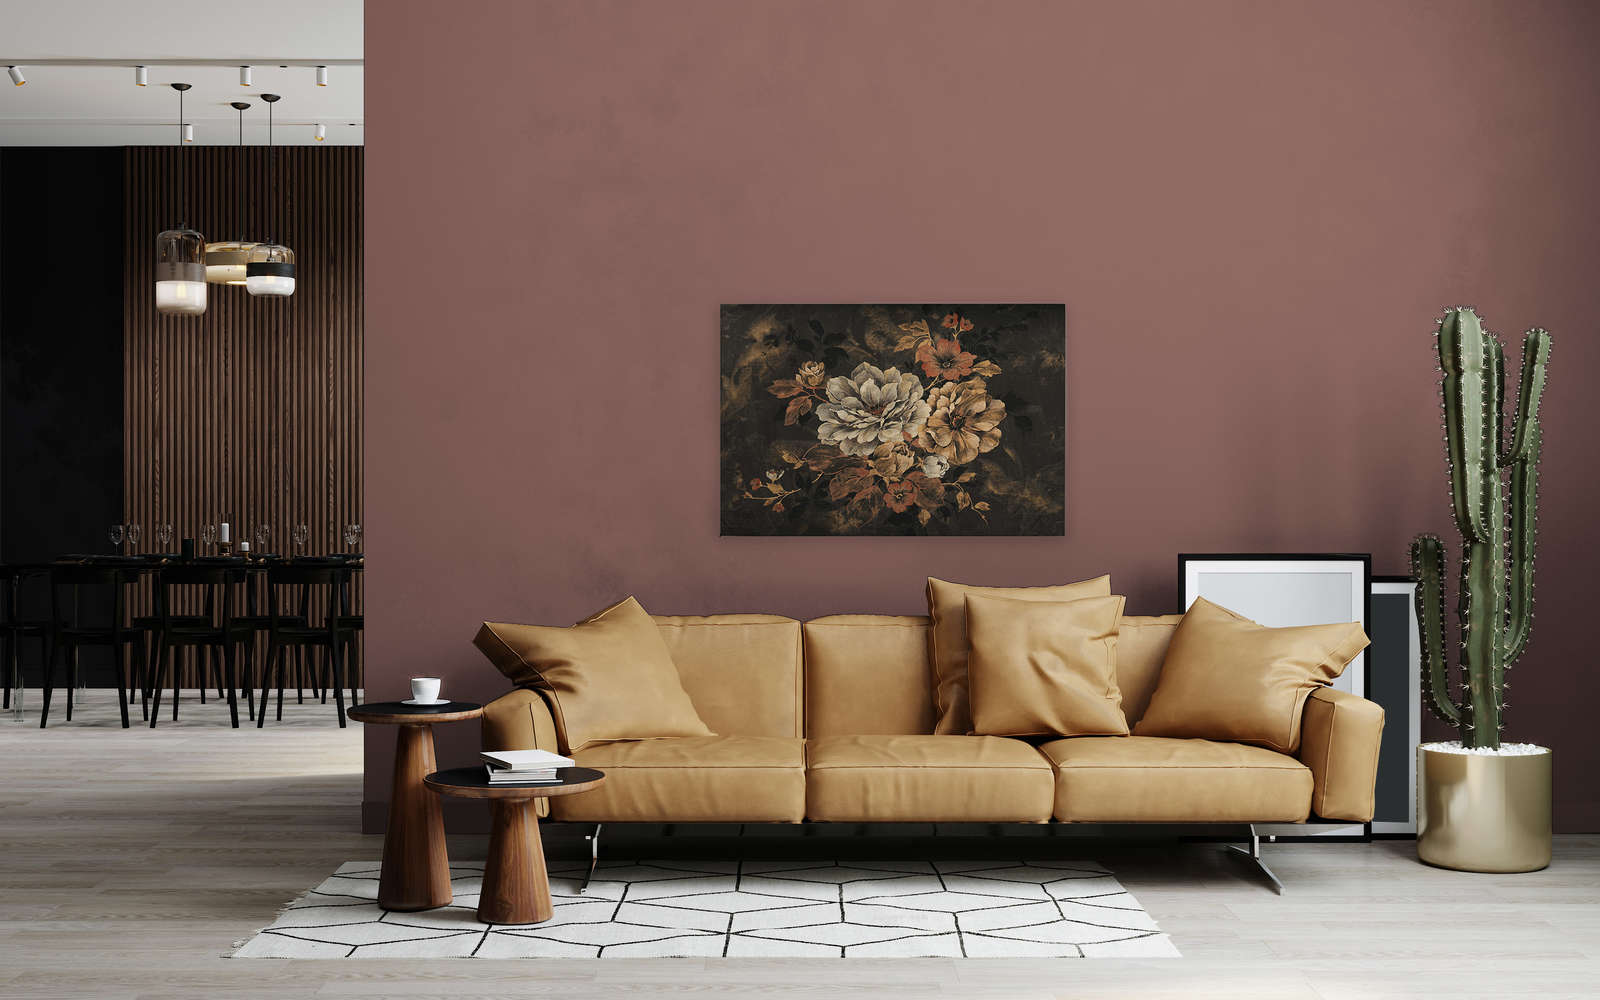             Peinture à l'huile sur toile Style de fleurs, look vintage - 1,20 m x 0,80 m
        